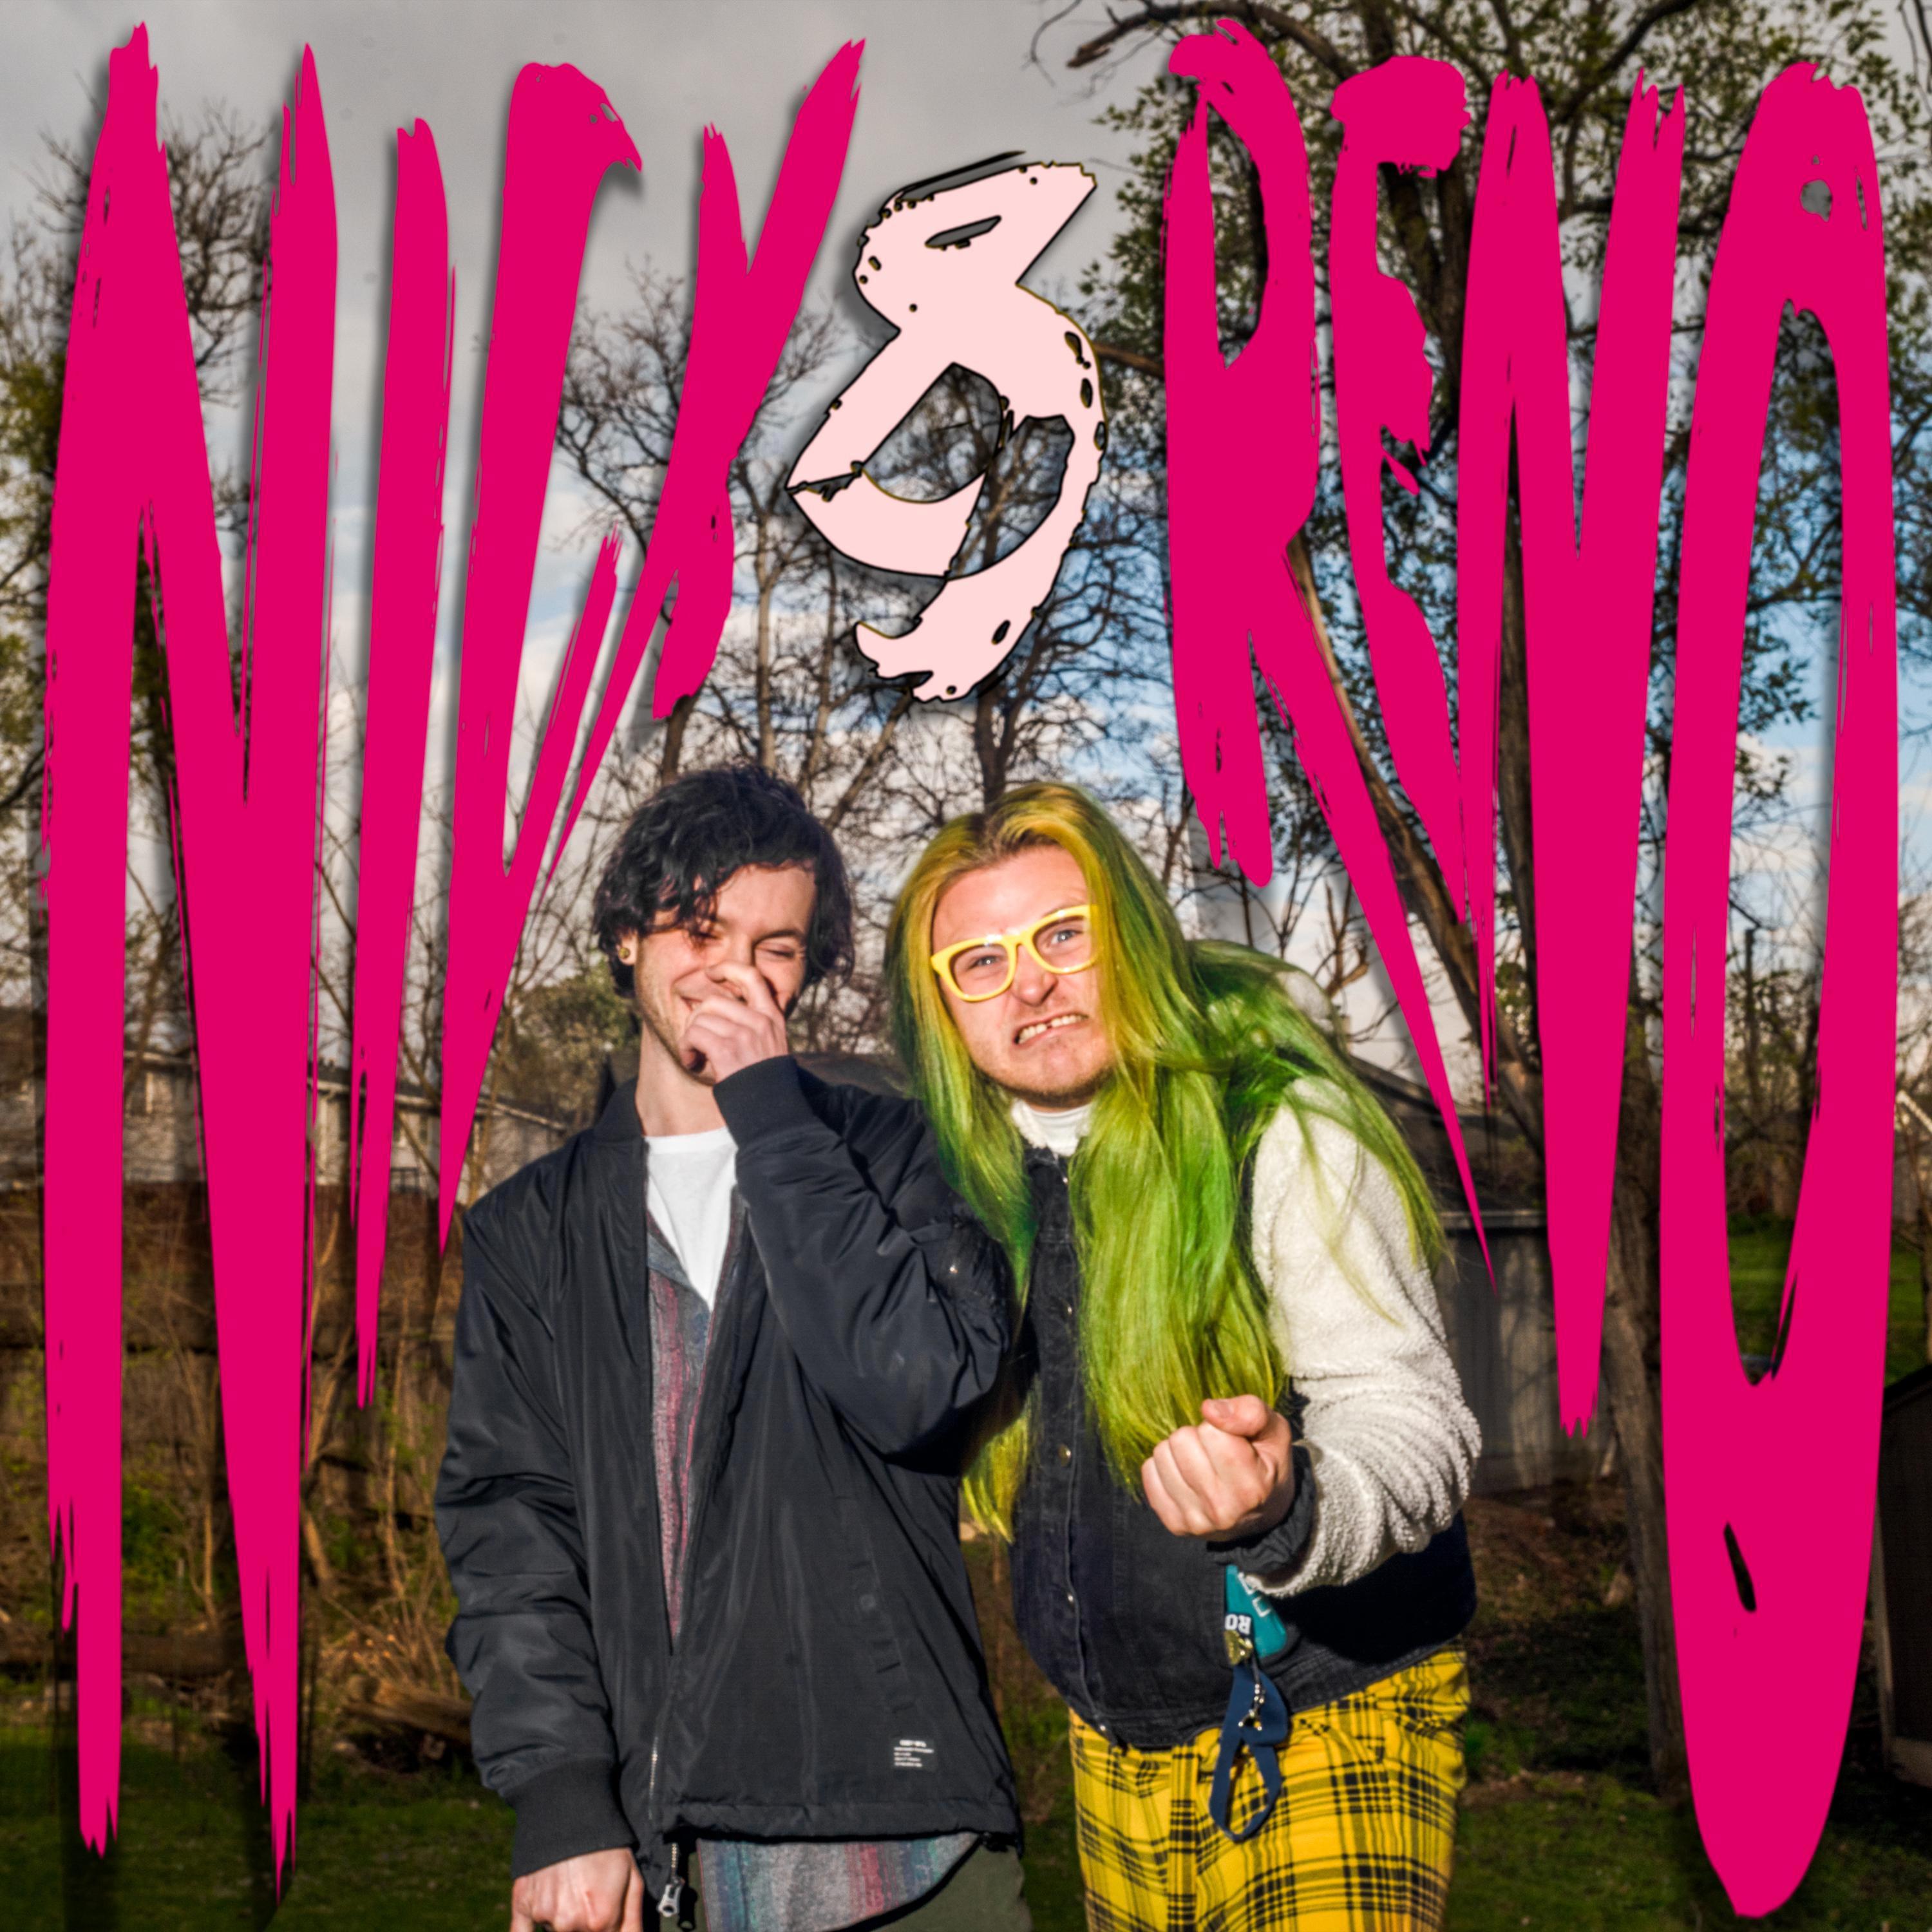 Reno - Punk Drunk Love (feat. Nick Maurer)